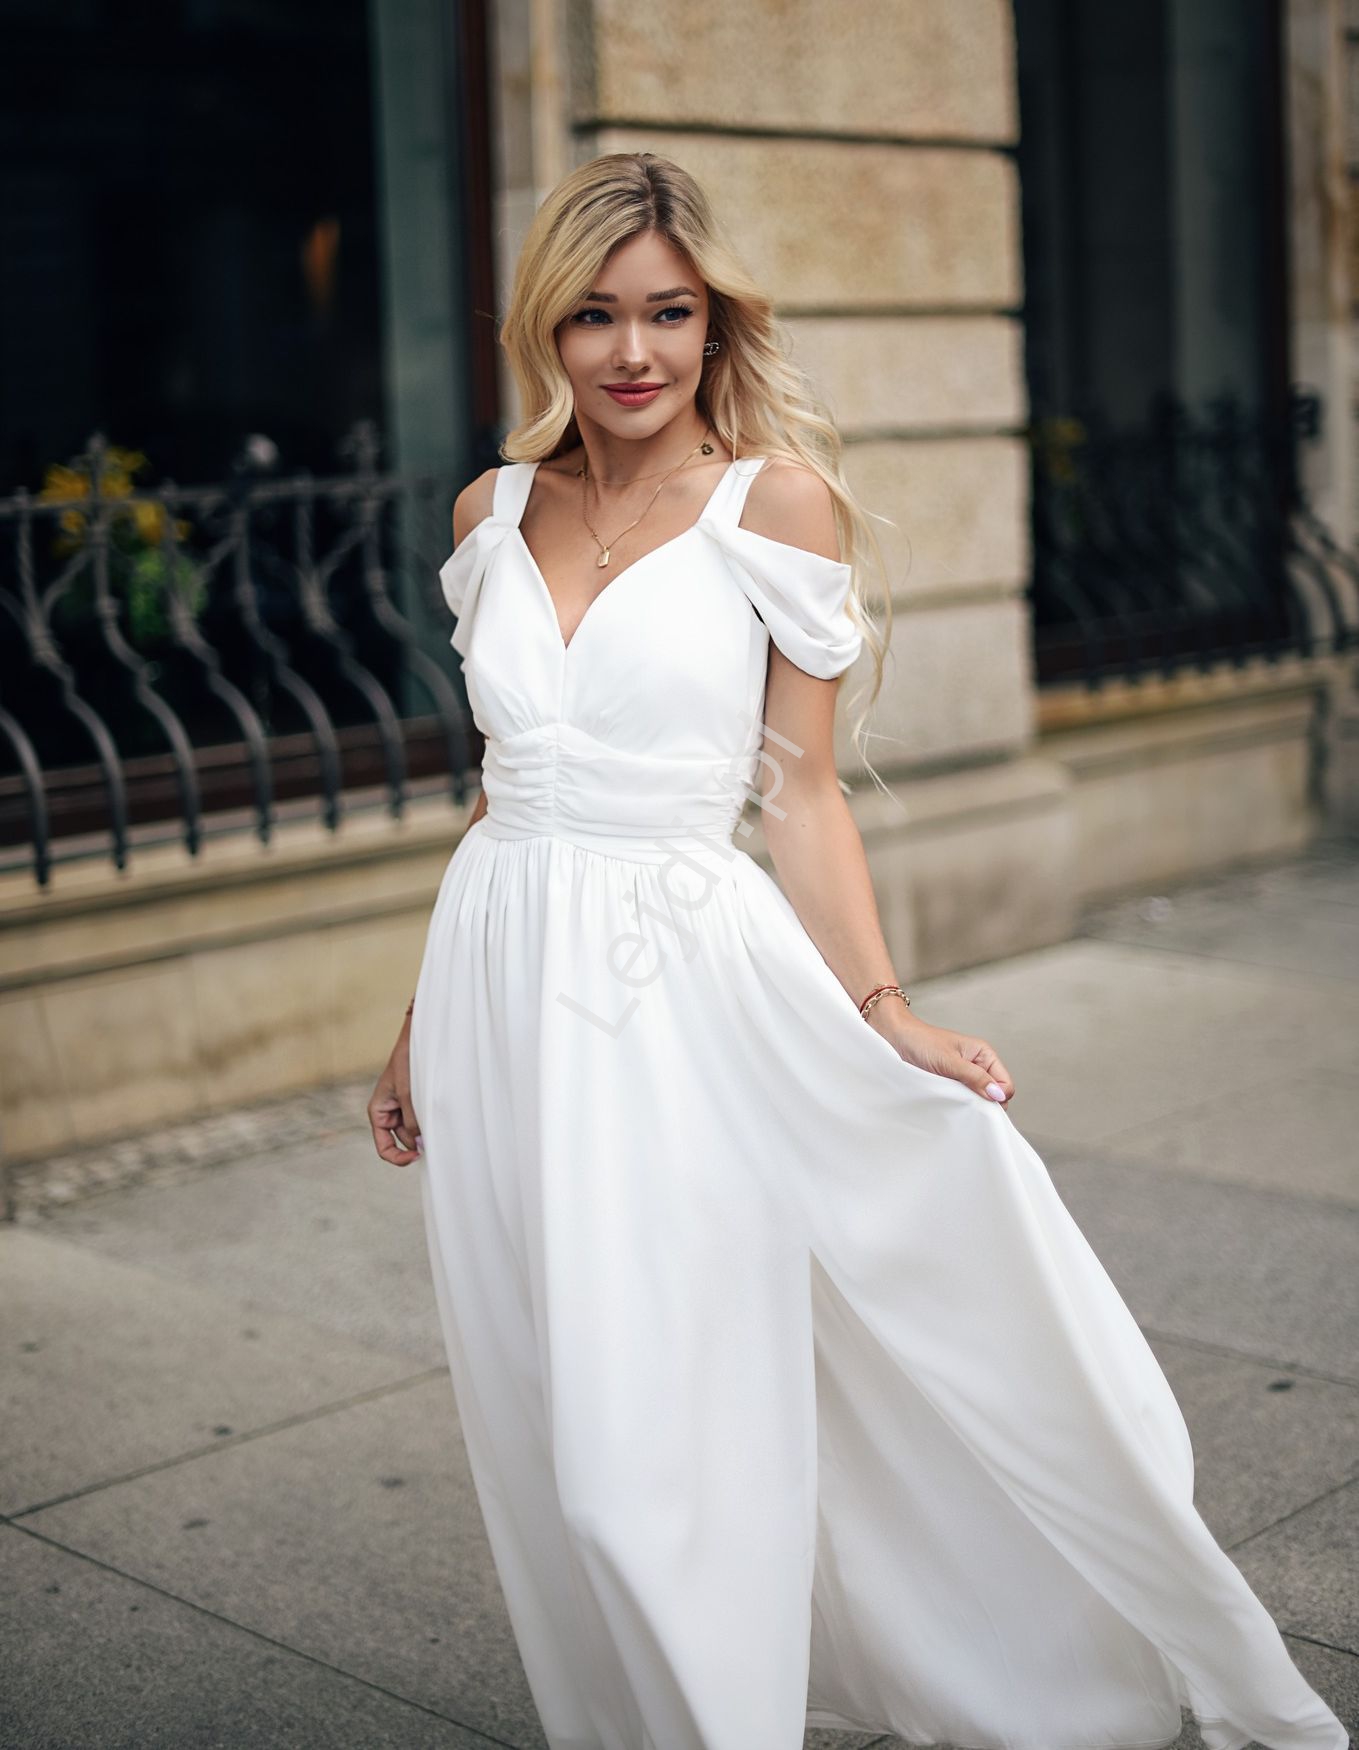  Kremowo biała sukienka ślubna w romantycznym stylu